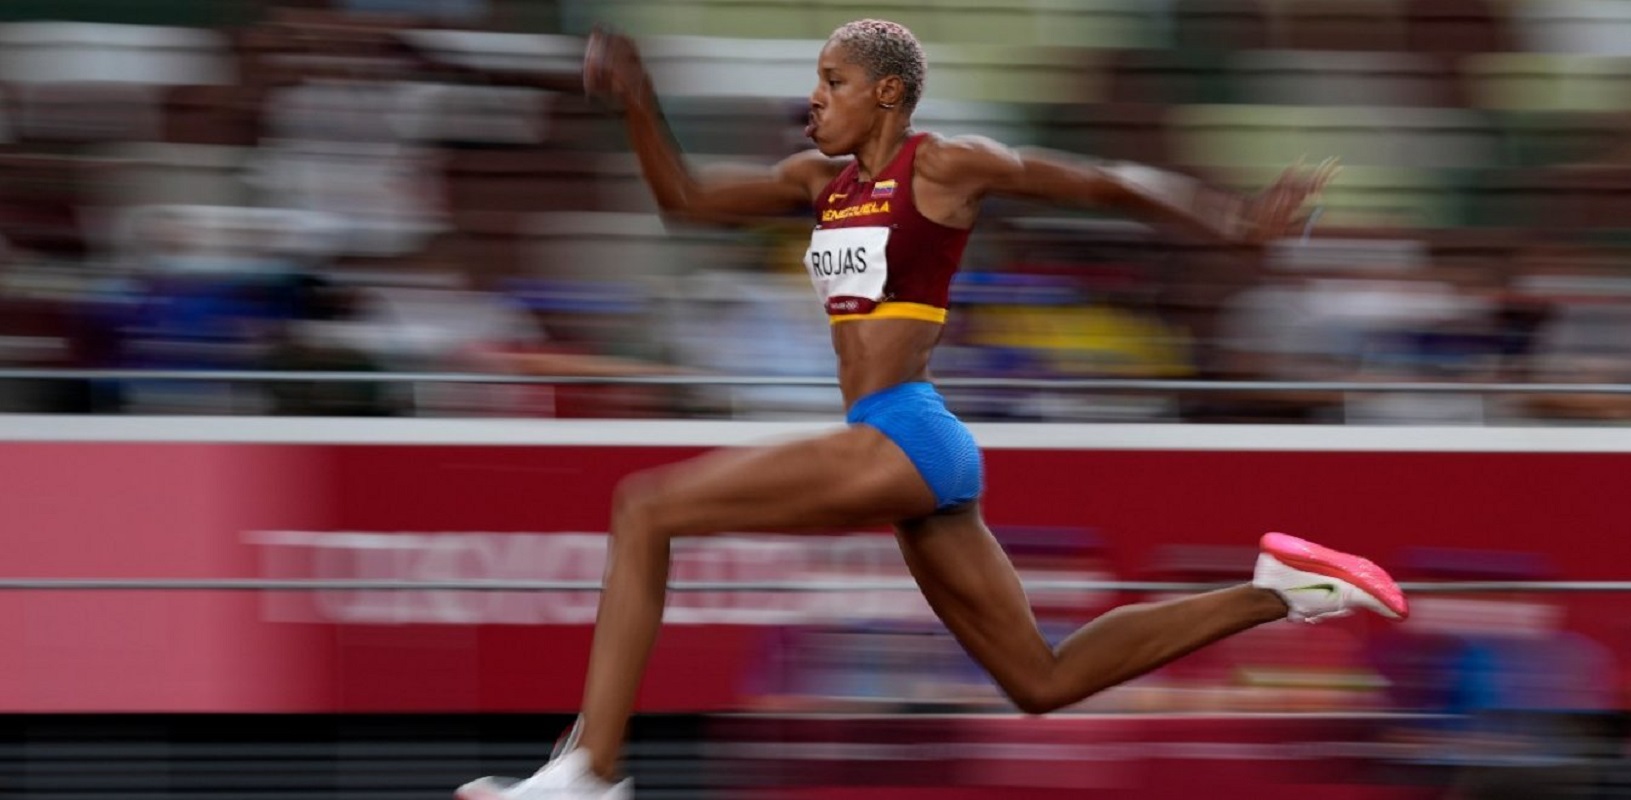 Γιουλιμάρ Ρόχας: Μυθικό παγκόσμιο ρεκόρ στο Τριπλούν και το 1ο Χρυσό στις γυναίκες στην Ιστορία της Βενεζουέλας στους Ολυμπιακούς Αγώνες